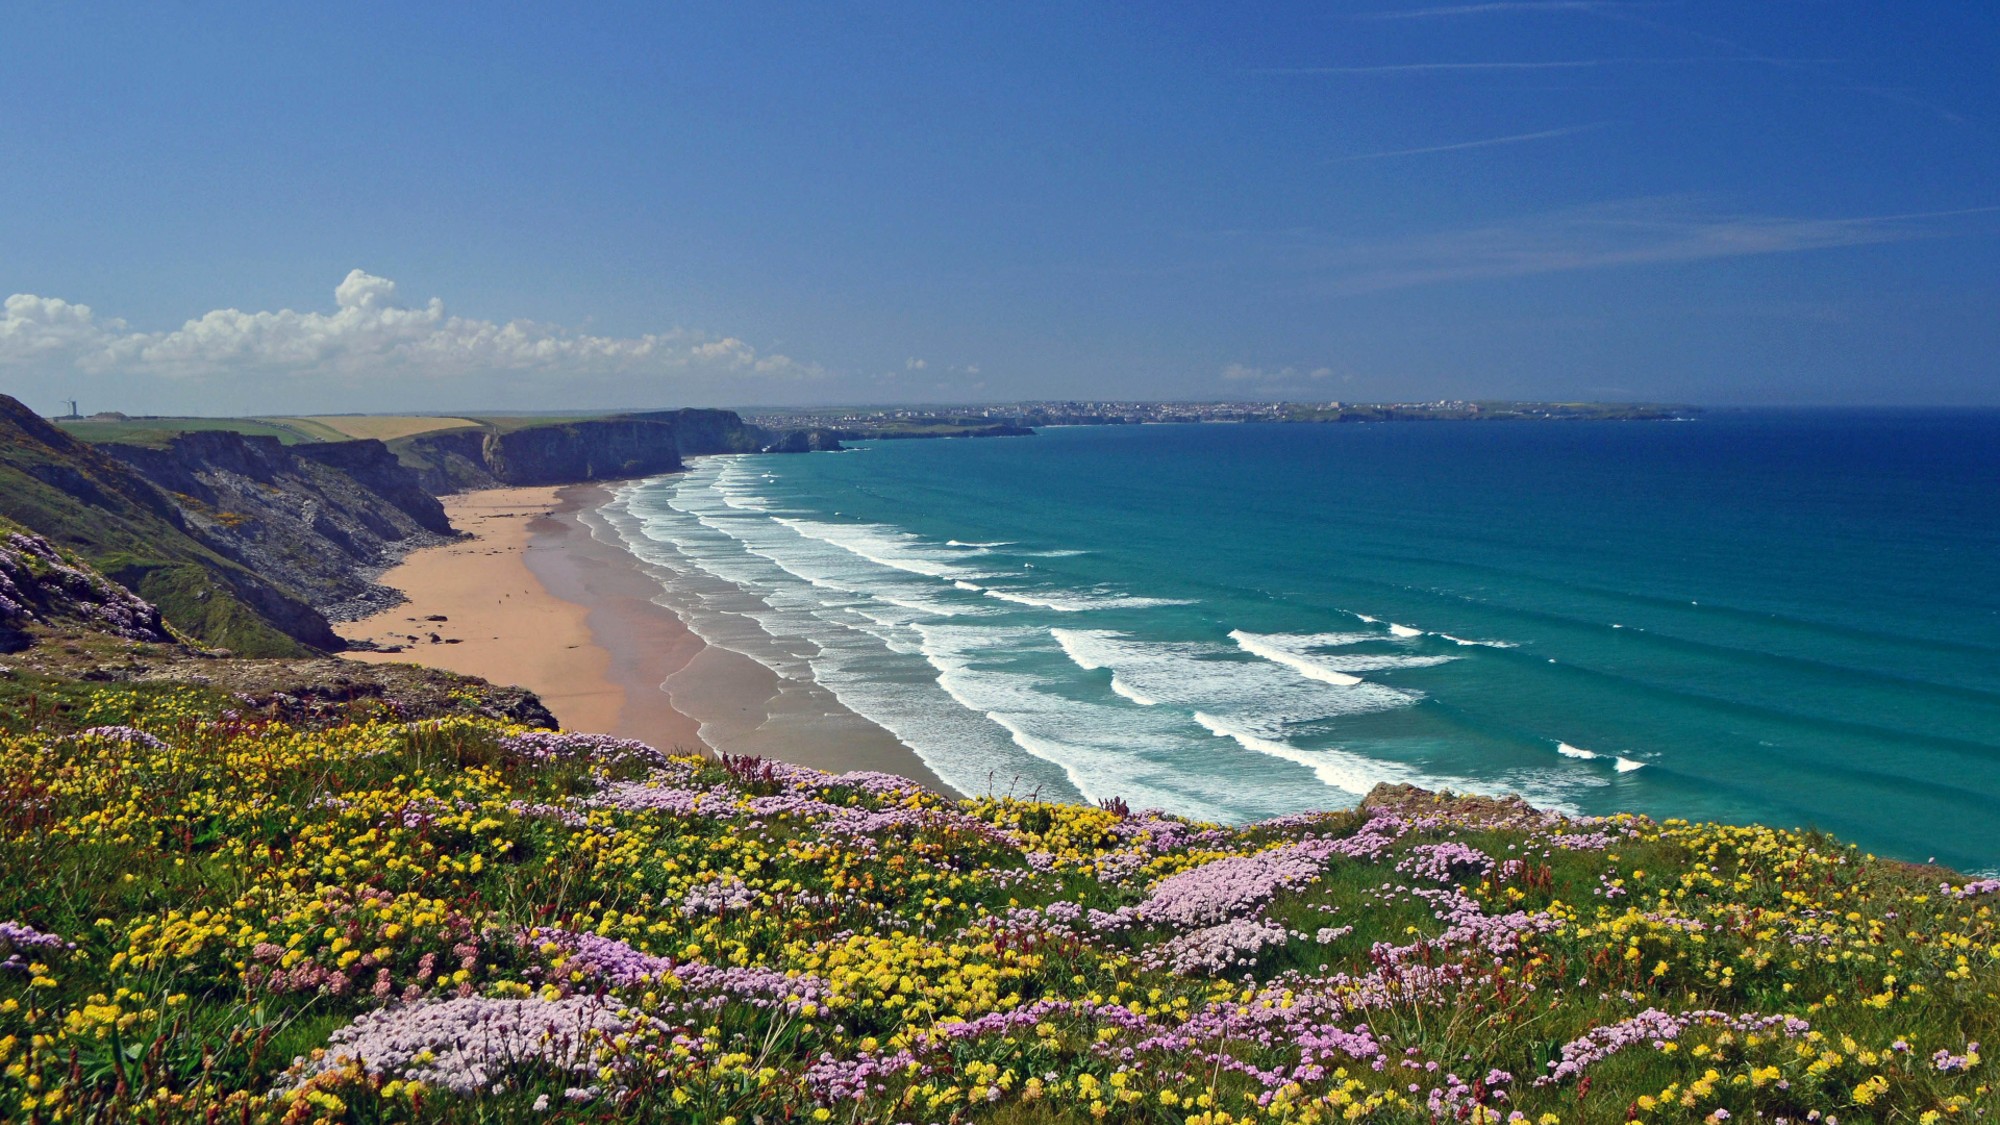  Best staycation destinations in Cornwall and Devon 